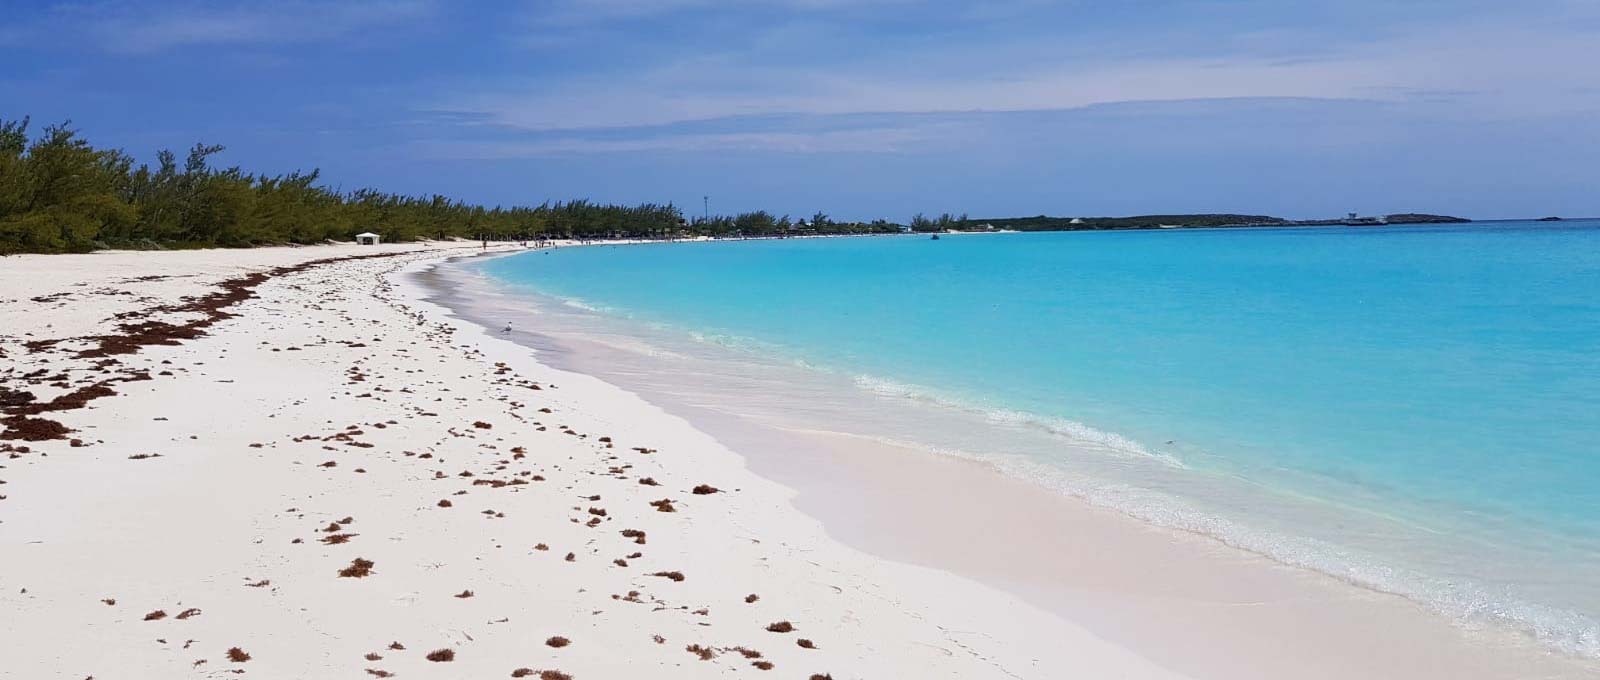 Vit sandstrand i Bahamas - Karibien